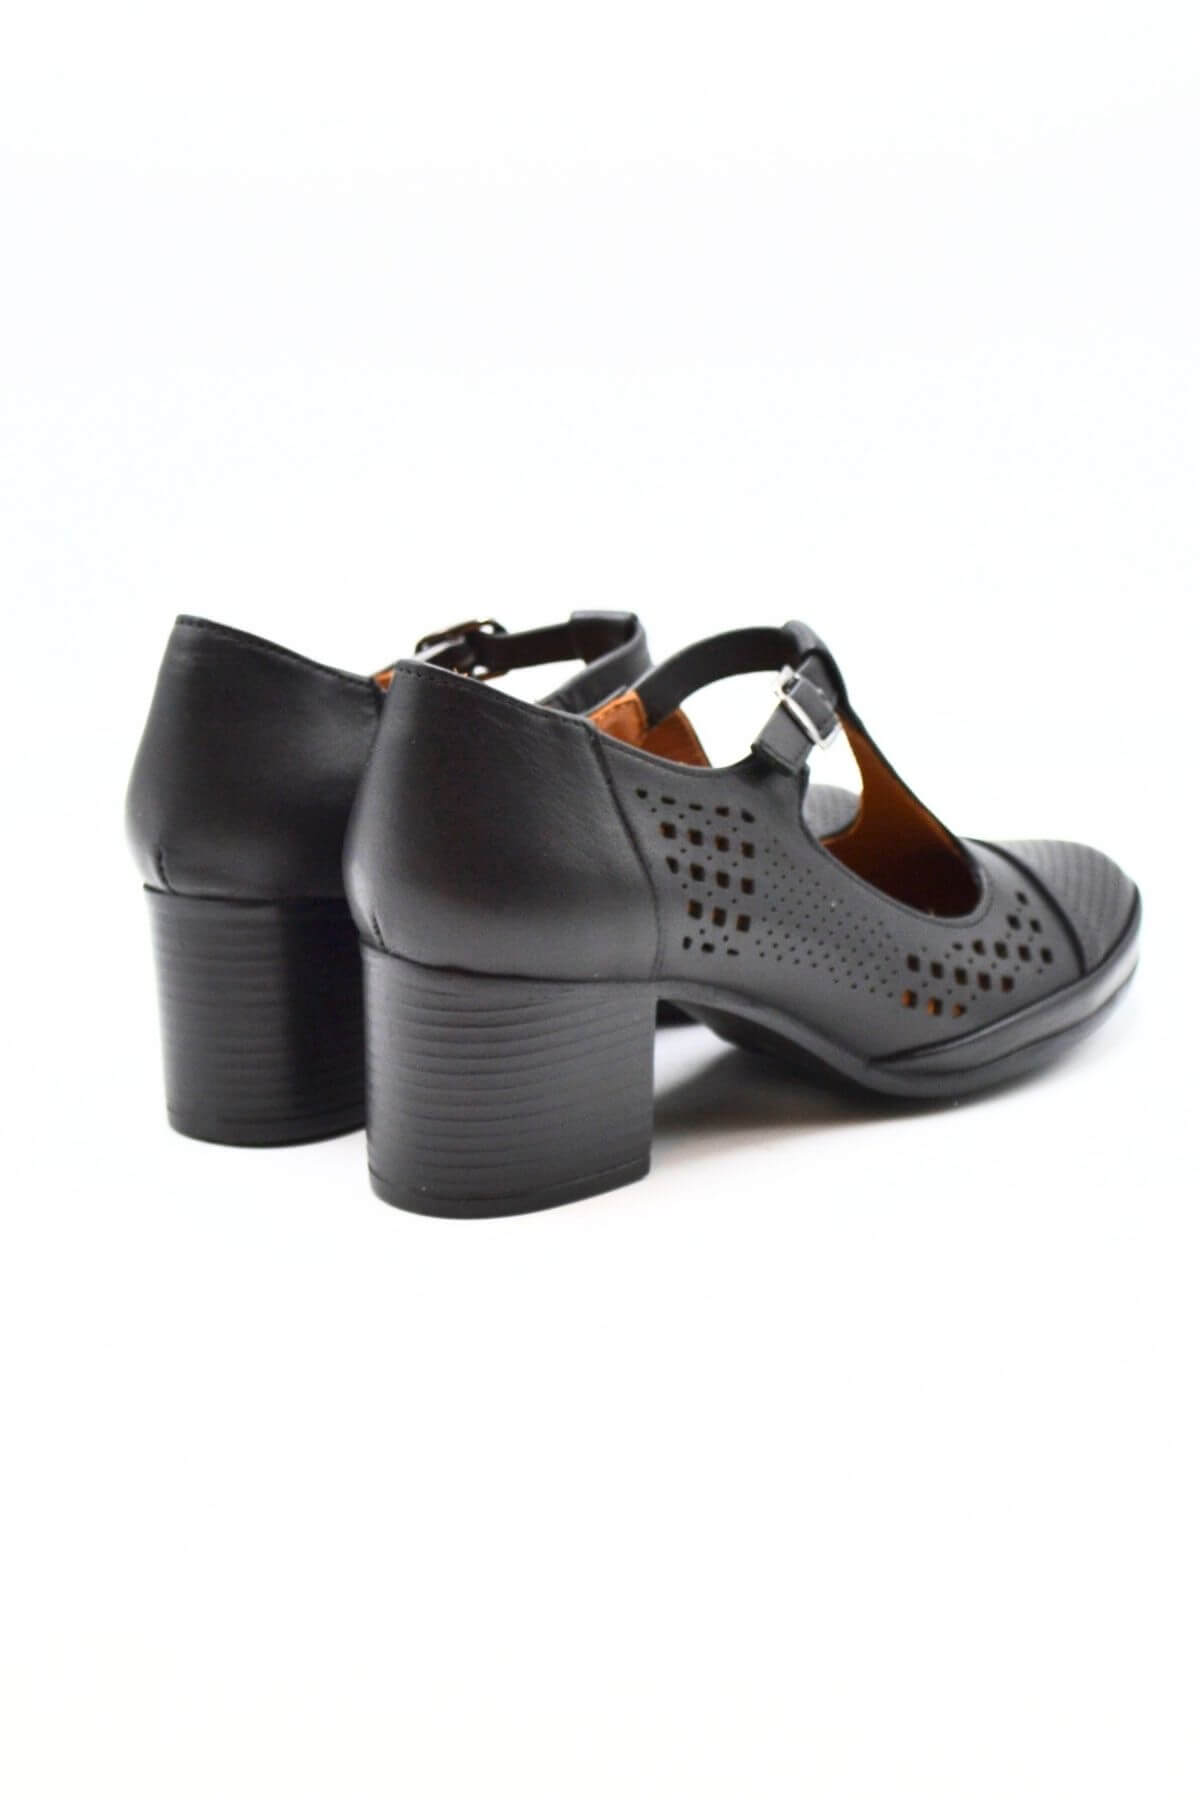 Kadın Yazlık Topuklu Deri Ayakkabı Siyah 1911923Y - Thumbnail